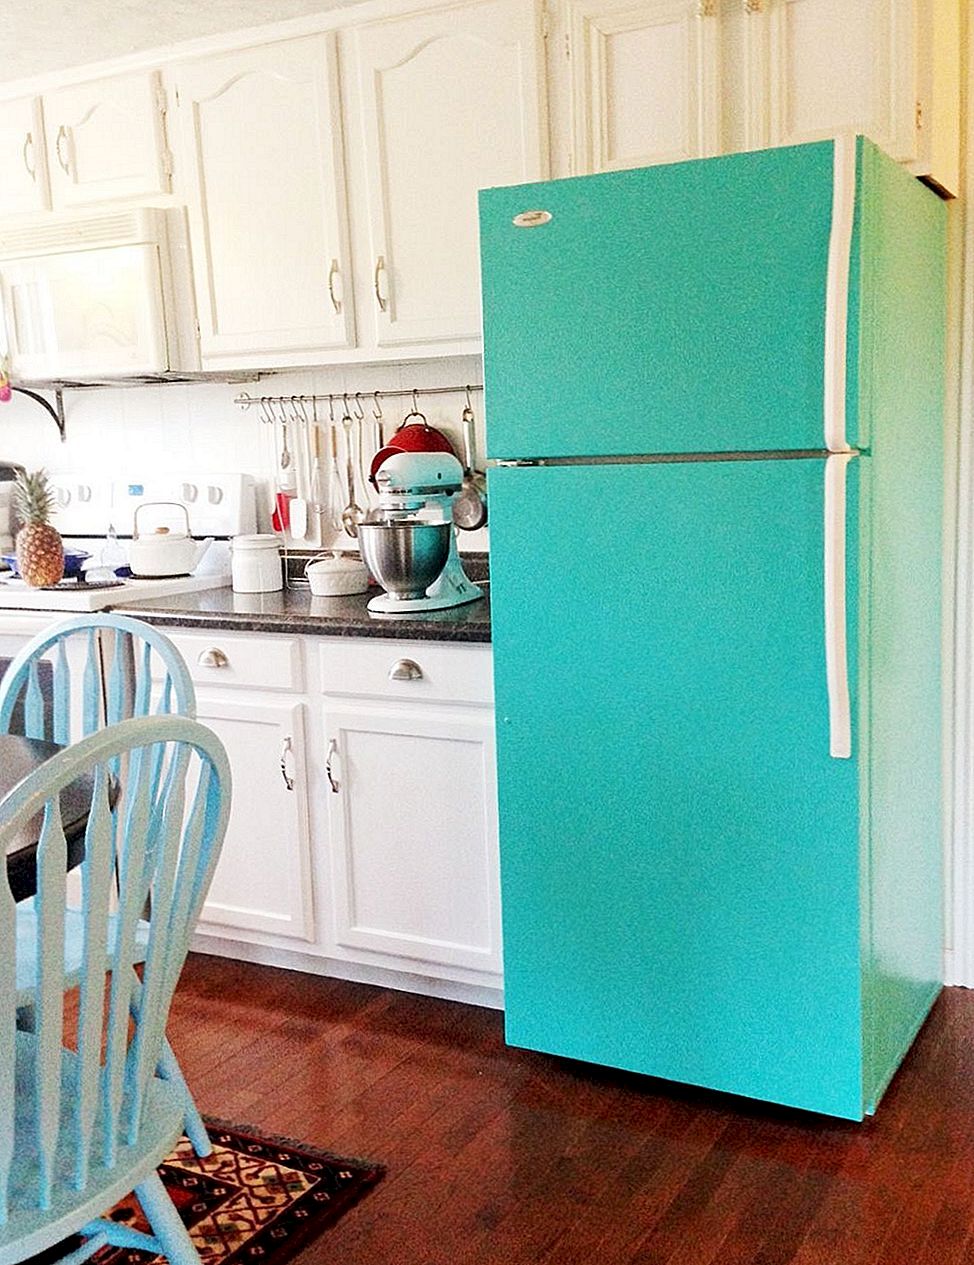 Enkla och roliga sätt att dekorera din kylskåp